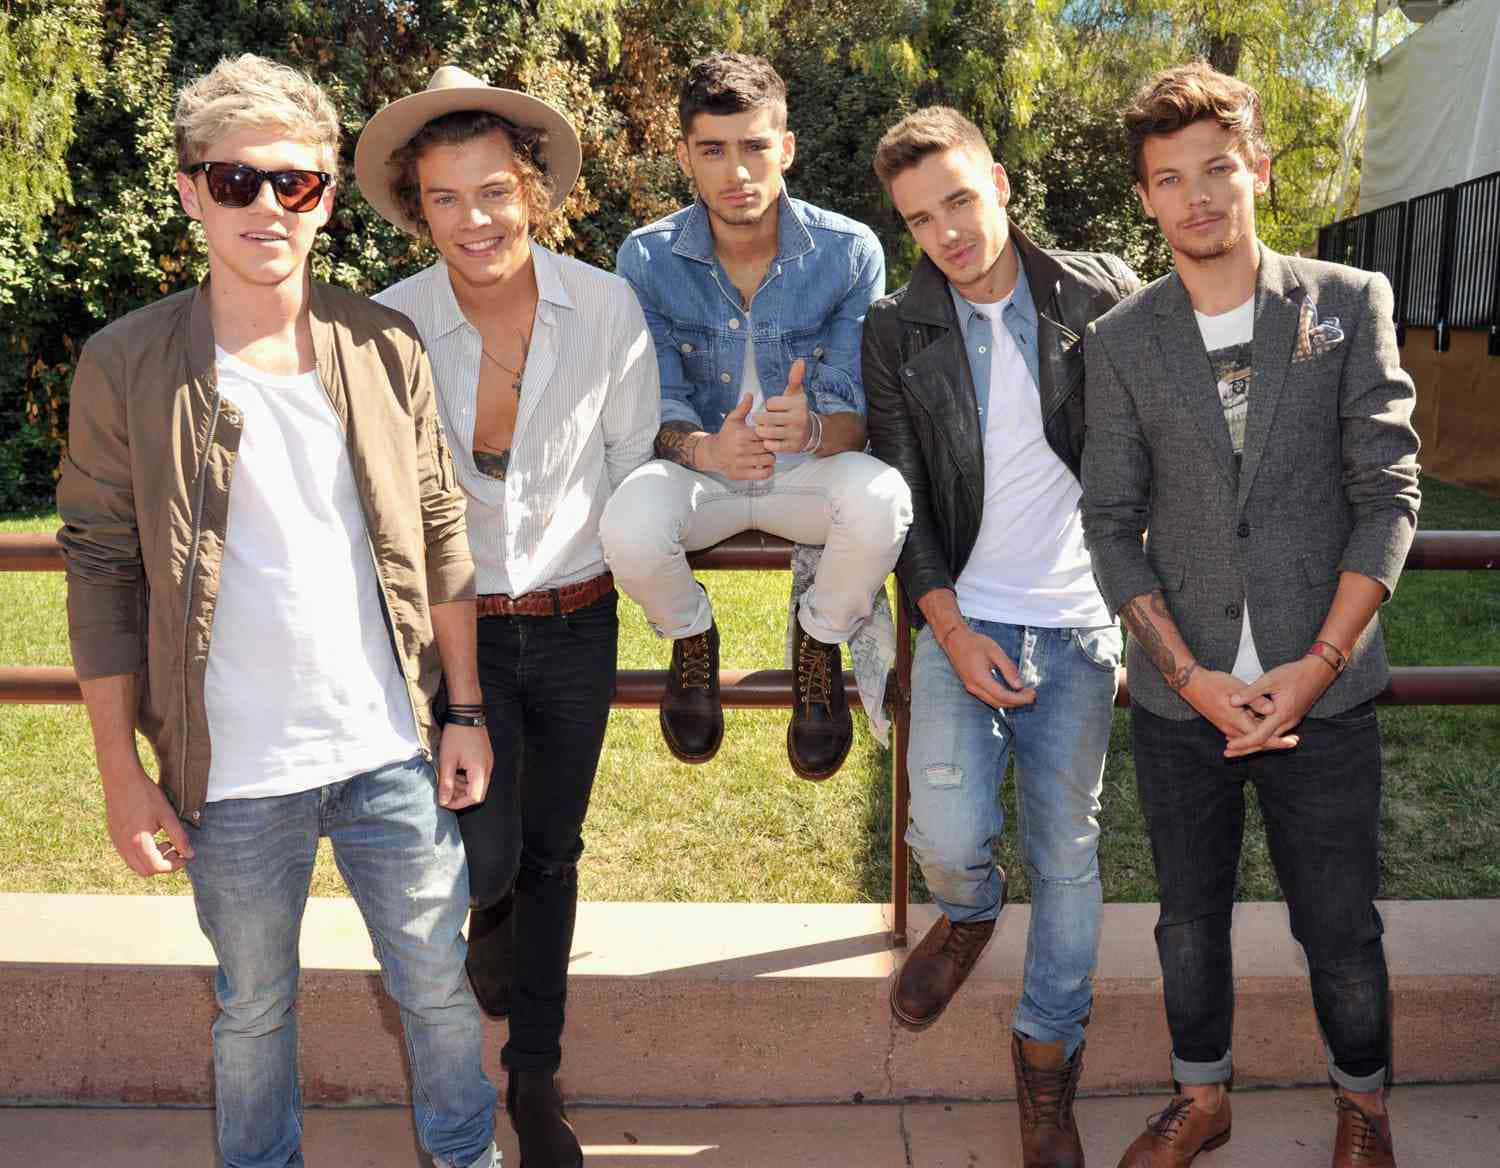 Allefem Originale Medlemmer Af Den Ikoniske Britiske Boyband, One Direction.